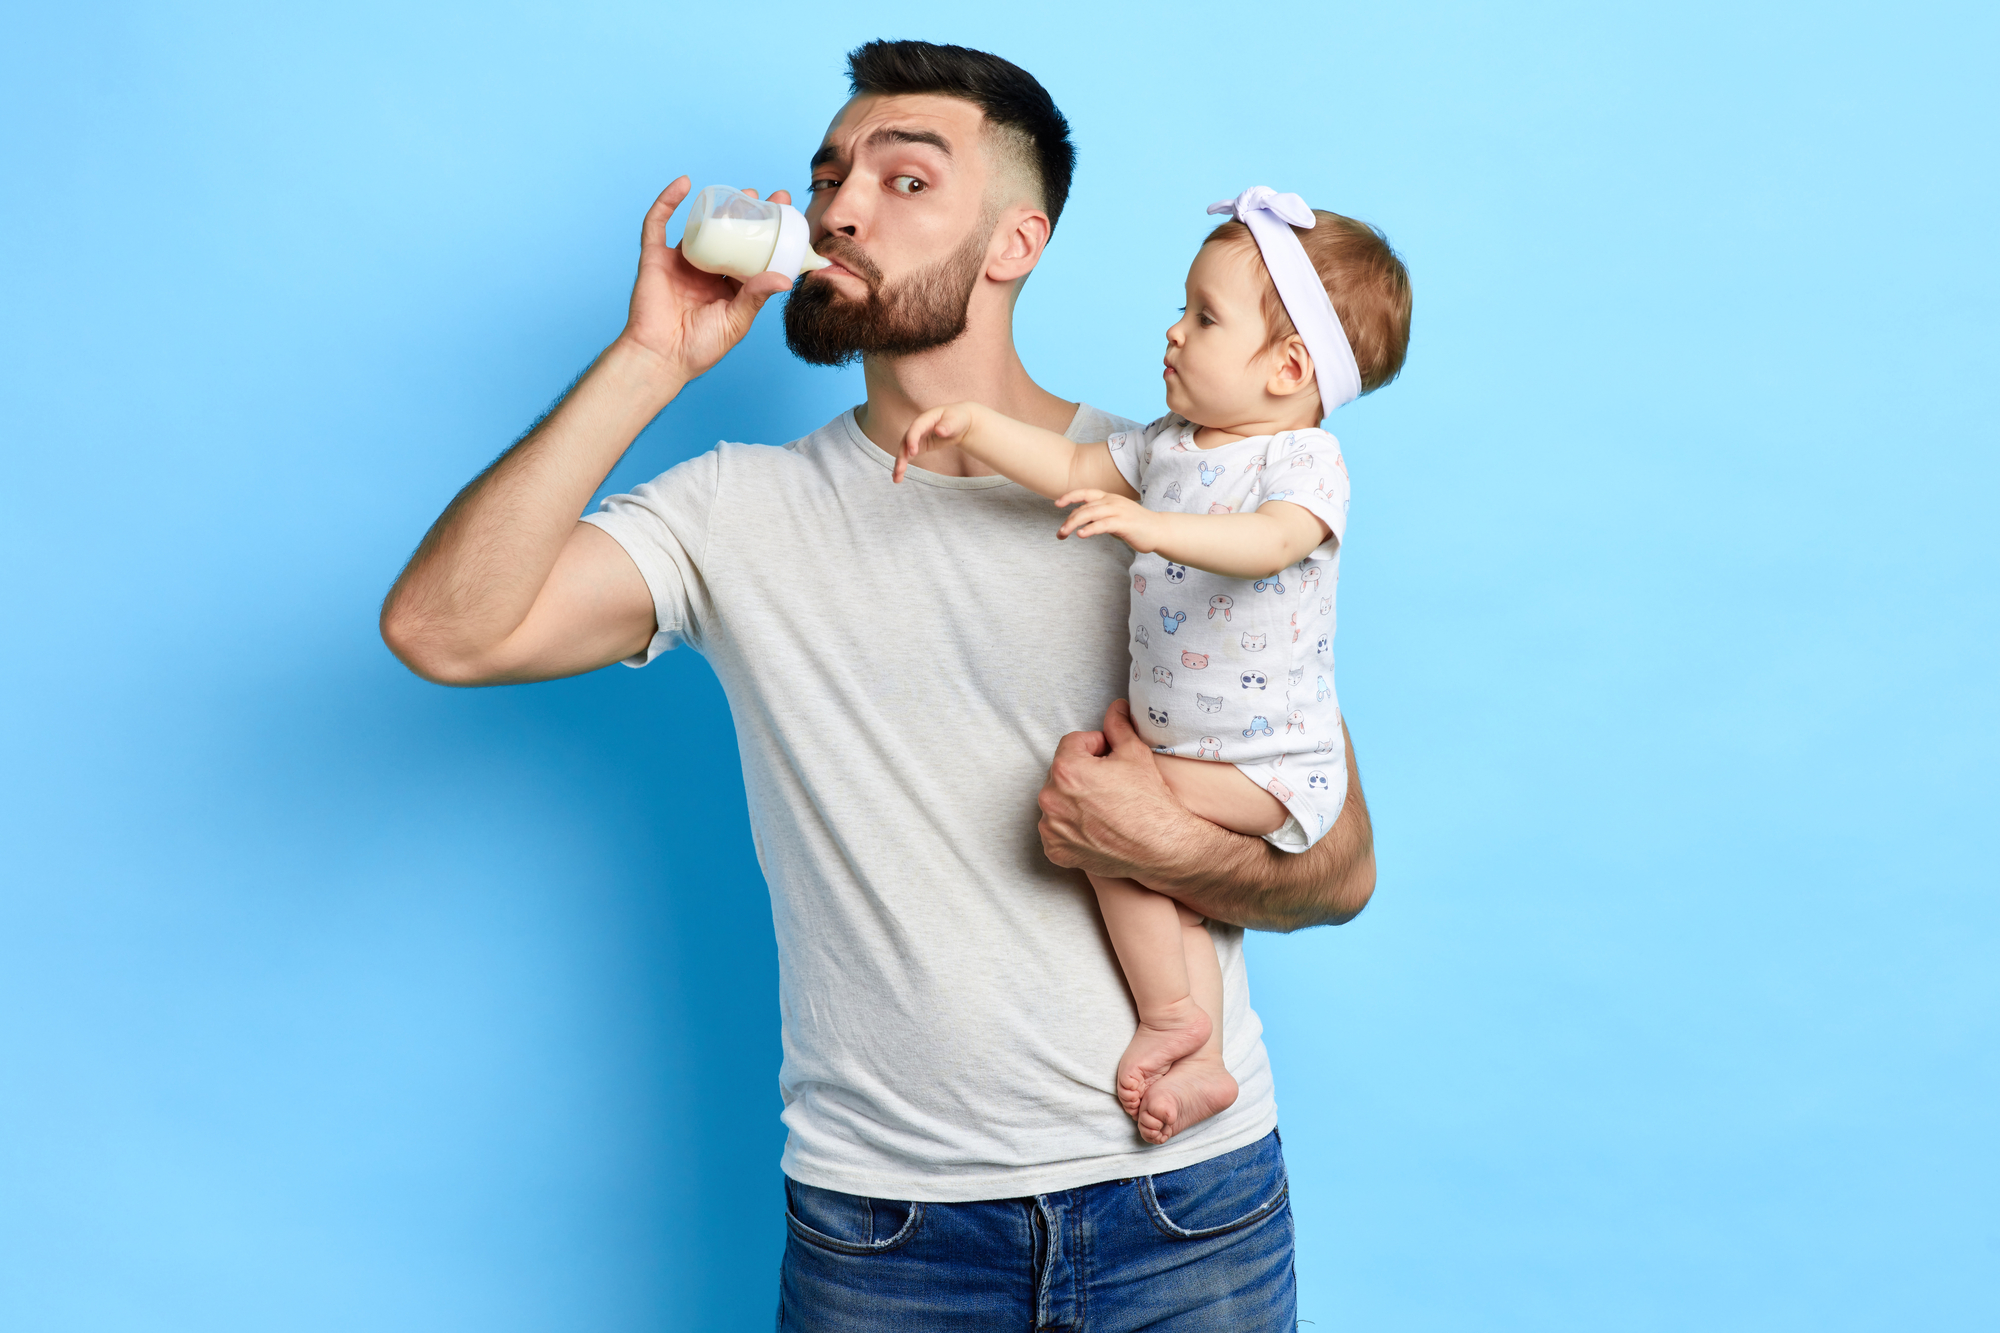 Junger Vater trinkt Milch aus dem Fläschchen seiner kleinen Tochter